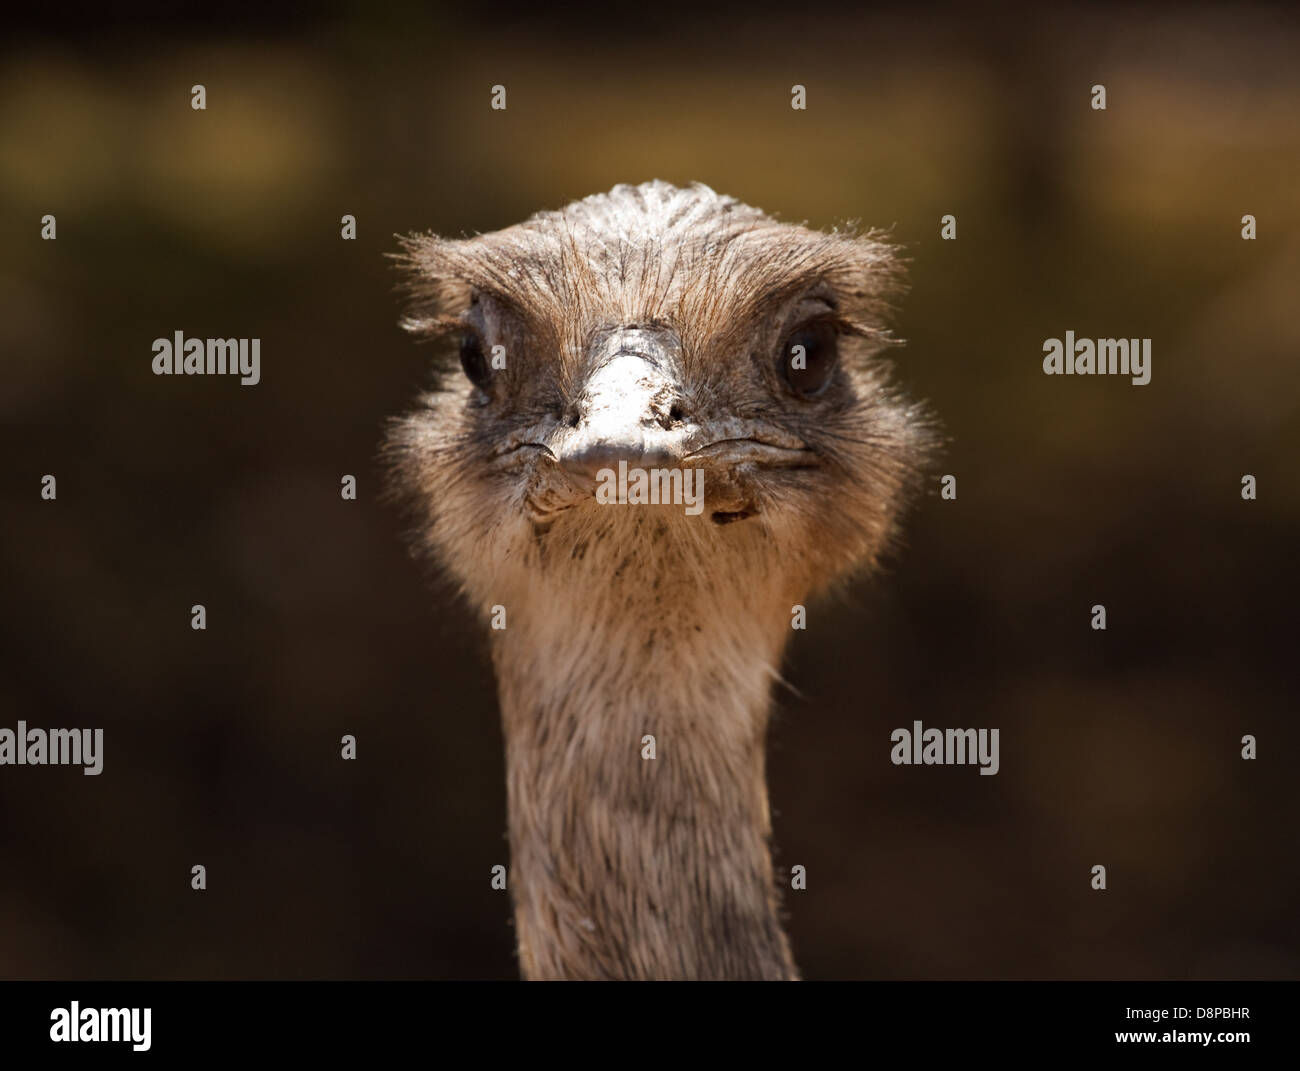 Primer plano de avestruz cabeza mirando hacia adelante para centros de visitantes o el concepto de denegación o enterrar la cabeza en la arena Foto de stock